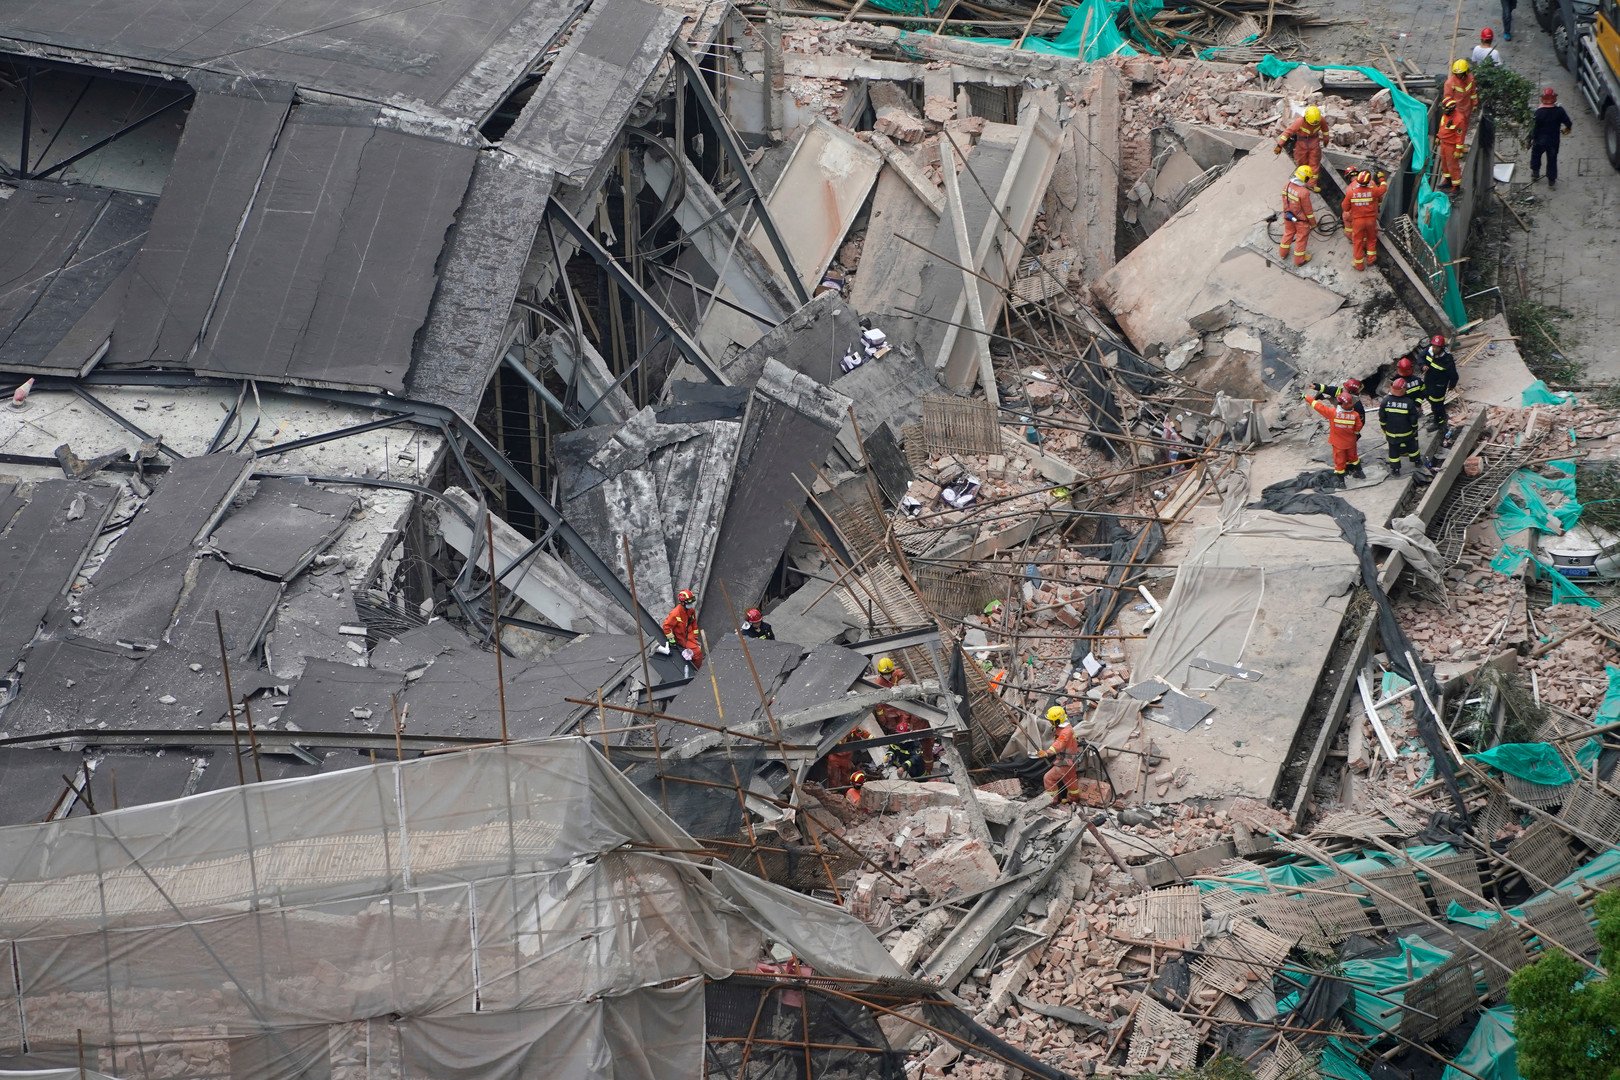 بالصور.. 9 أشخاص عالقون تحت الأنقاض جراء انهيار مبنى في شنغهاي